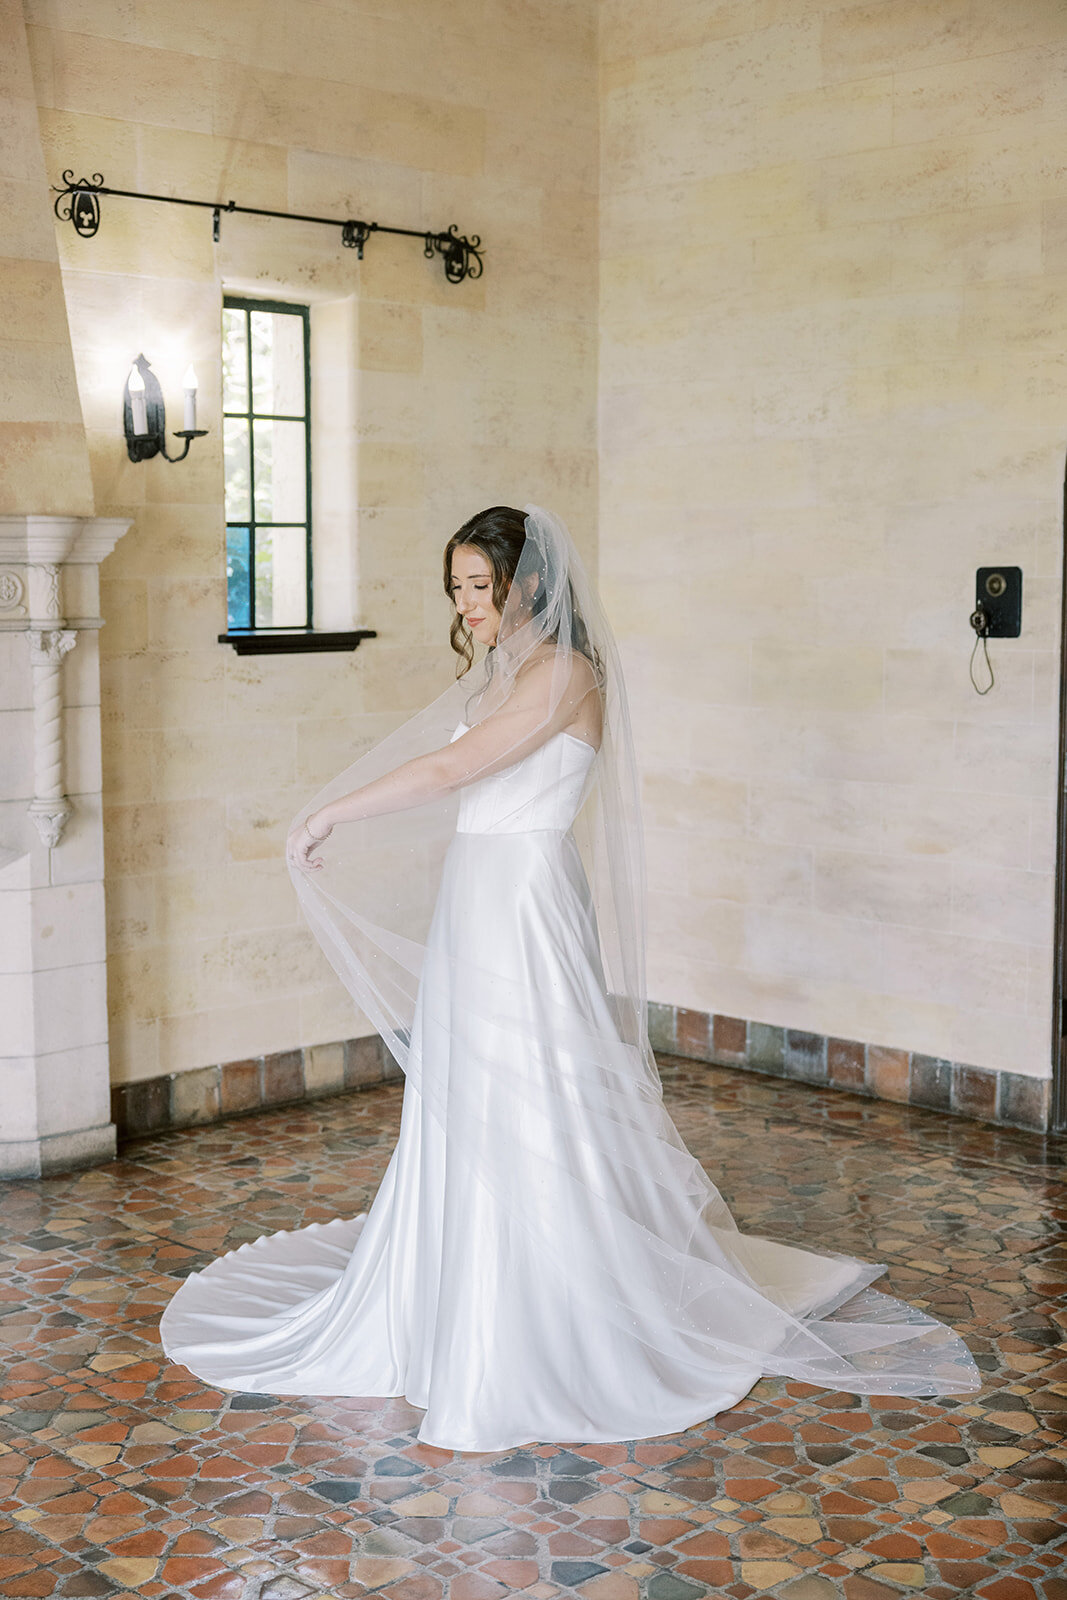 CORNELIA ZAISS PHOTOGRAPHY COURTNEY + ANDREW WEDDING 0245_websize